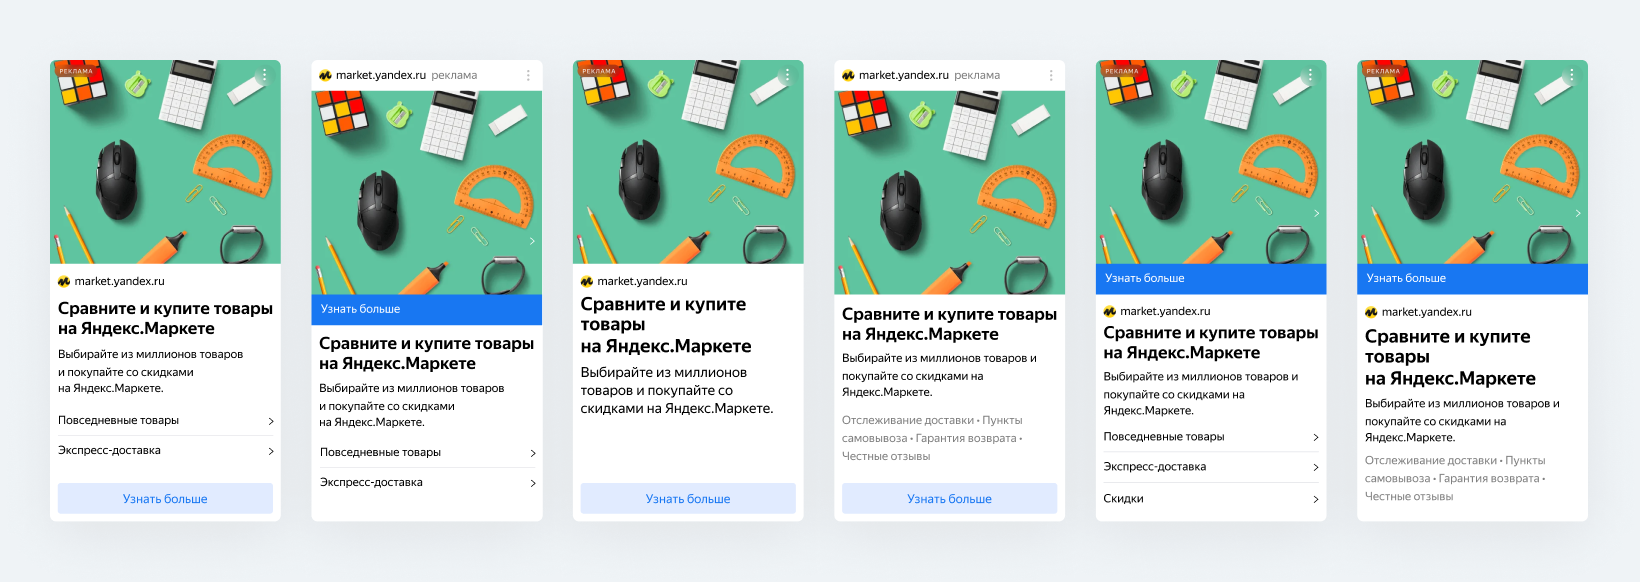 Яндекс представил новую технологию для для объявлений в РСЯ